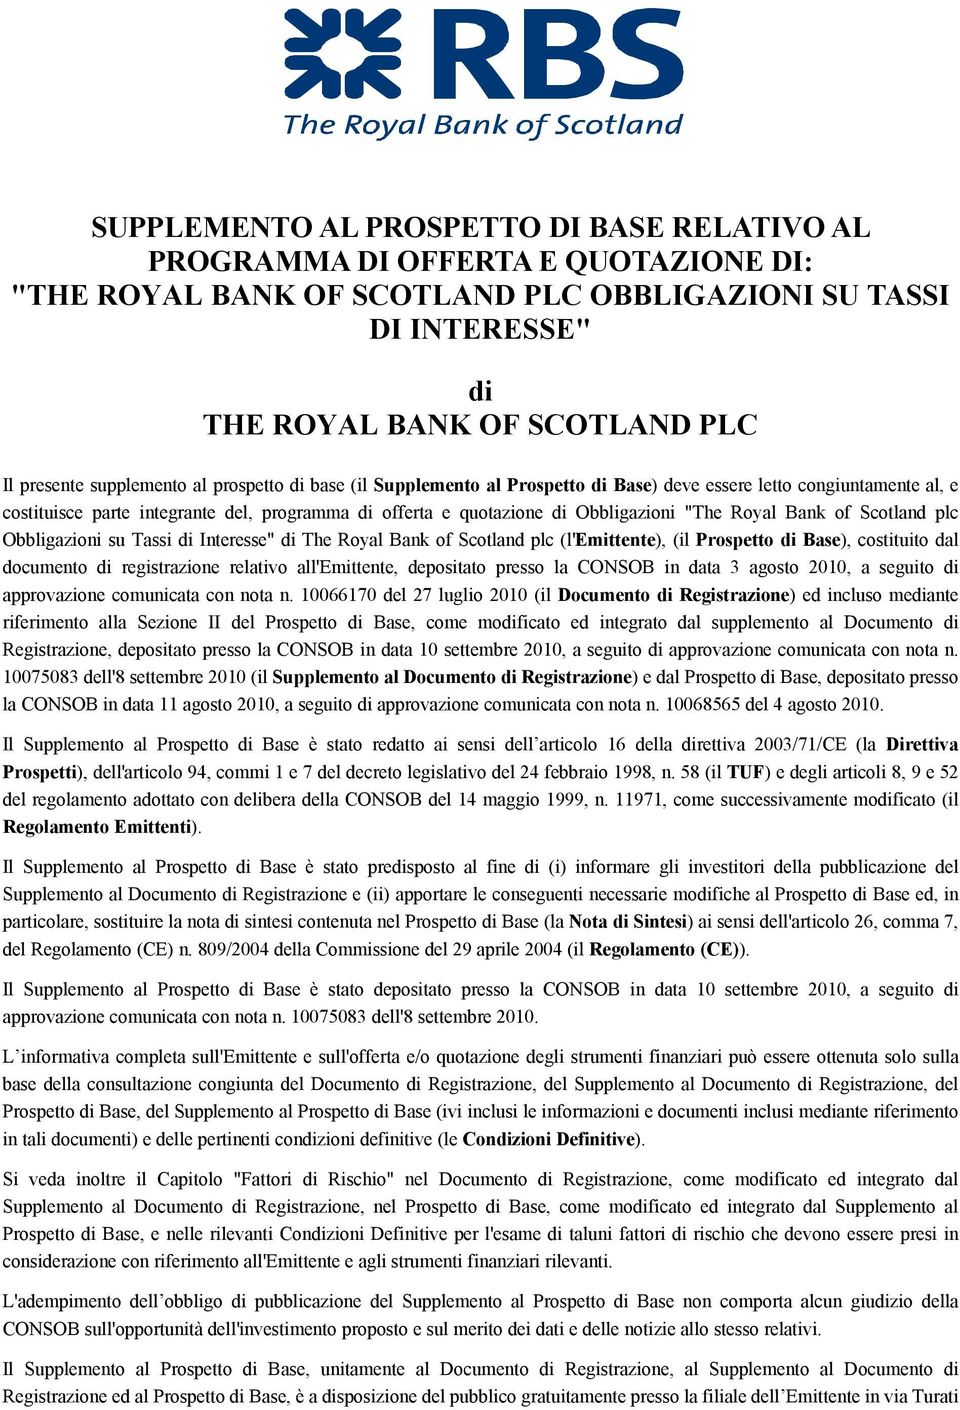 Royal Bank of Scotland plc Obbligazioni su Tassi di Interesse" di The Royal Bank of Scotland plc (l'emittente), (il Prospetto di Base), costituito dal documento di registrazione relativo